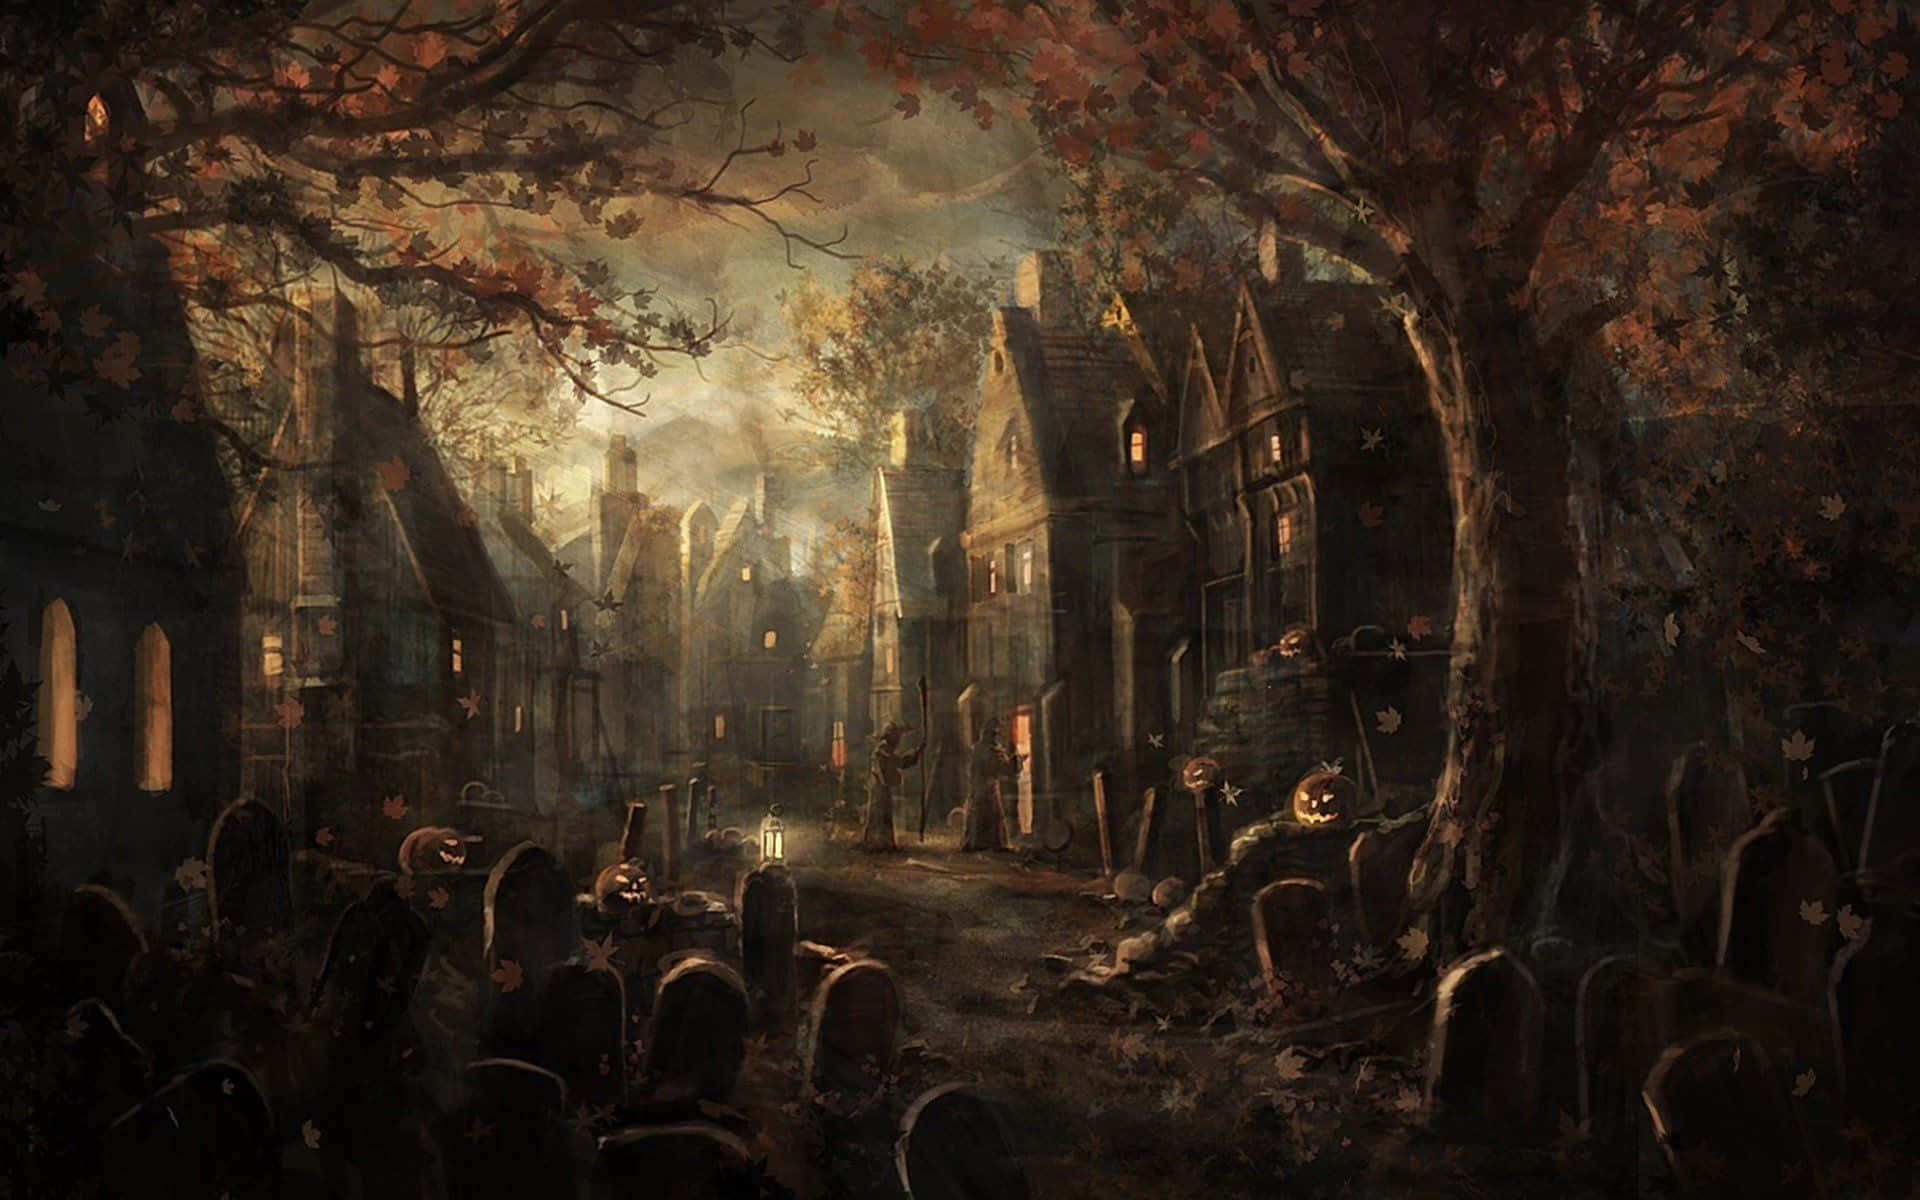 Omgivet af uhyggelige hovedsten, ser den lille pige i heksedragt dybt ind i mørket af denne Halloween gravplads. Wallpaper